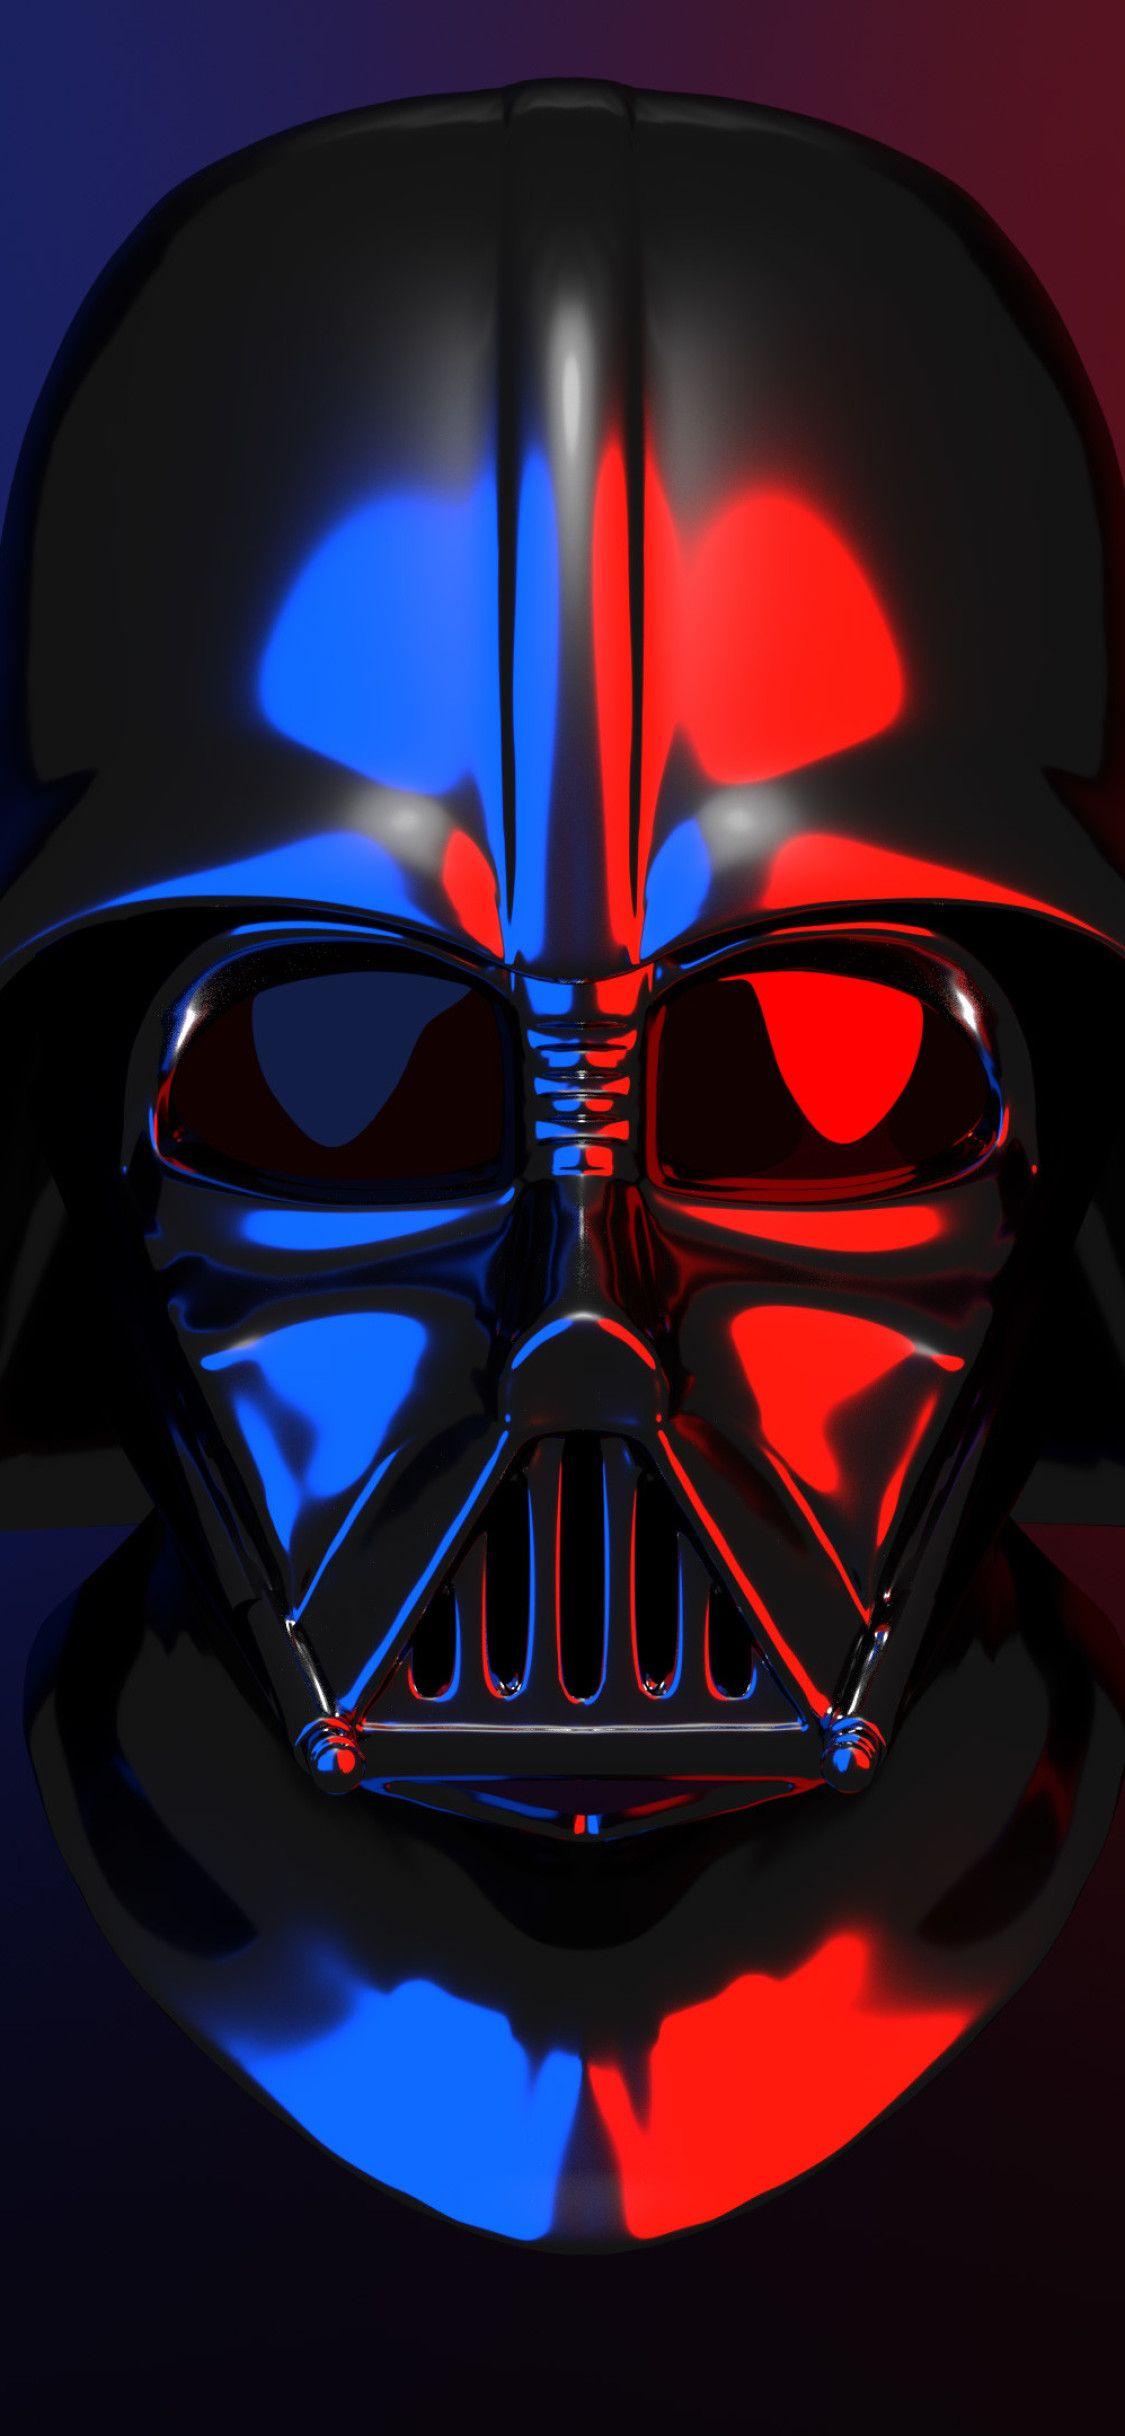 Darth Vader iPhone X Wallpapers Top Free Darth Vader